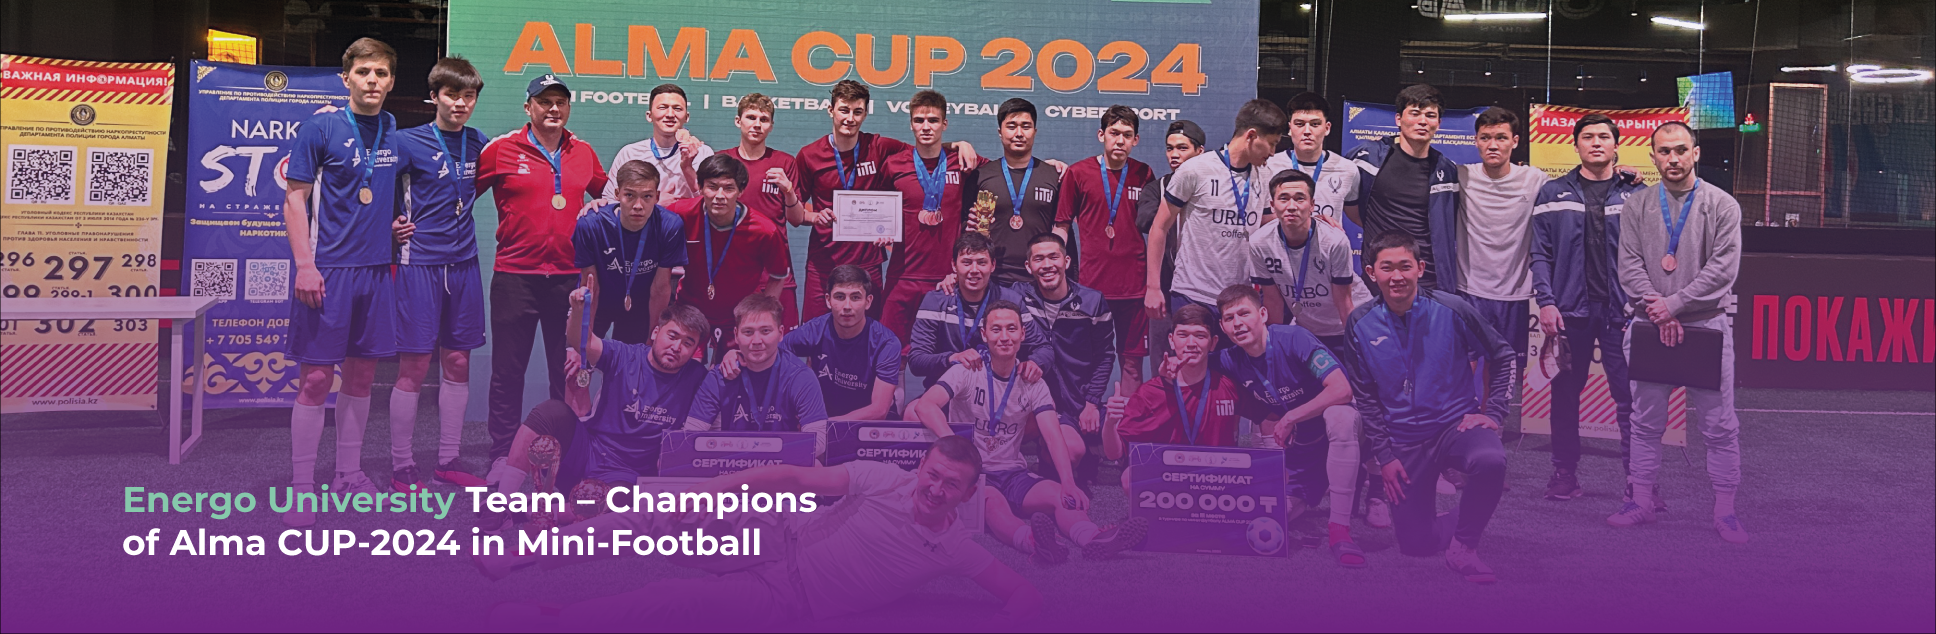 Команда Energo University – чемпион  Alma CUP-2024 по мини-футболу